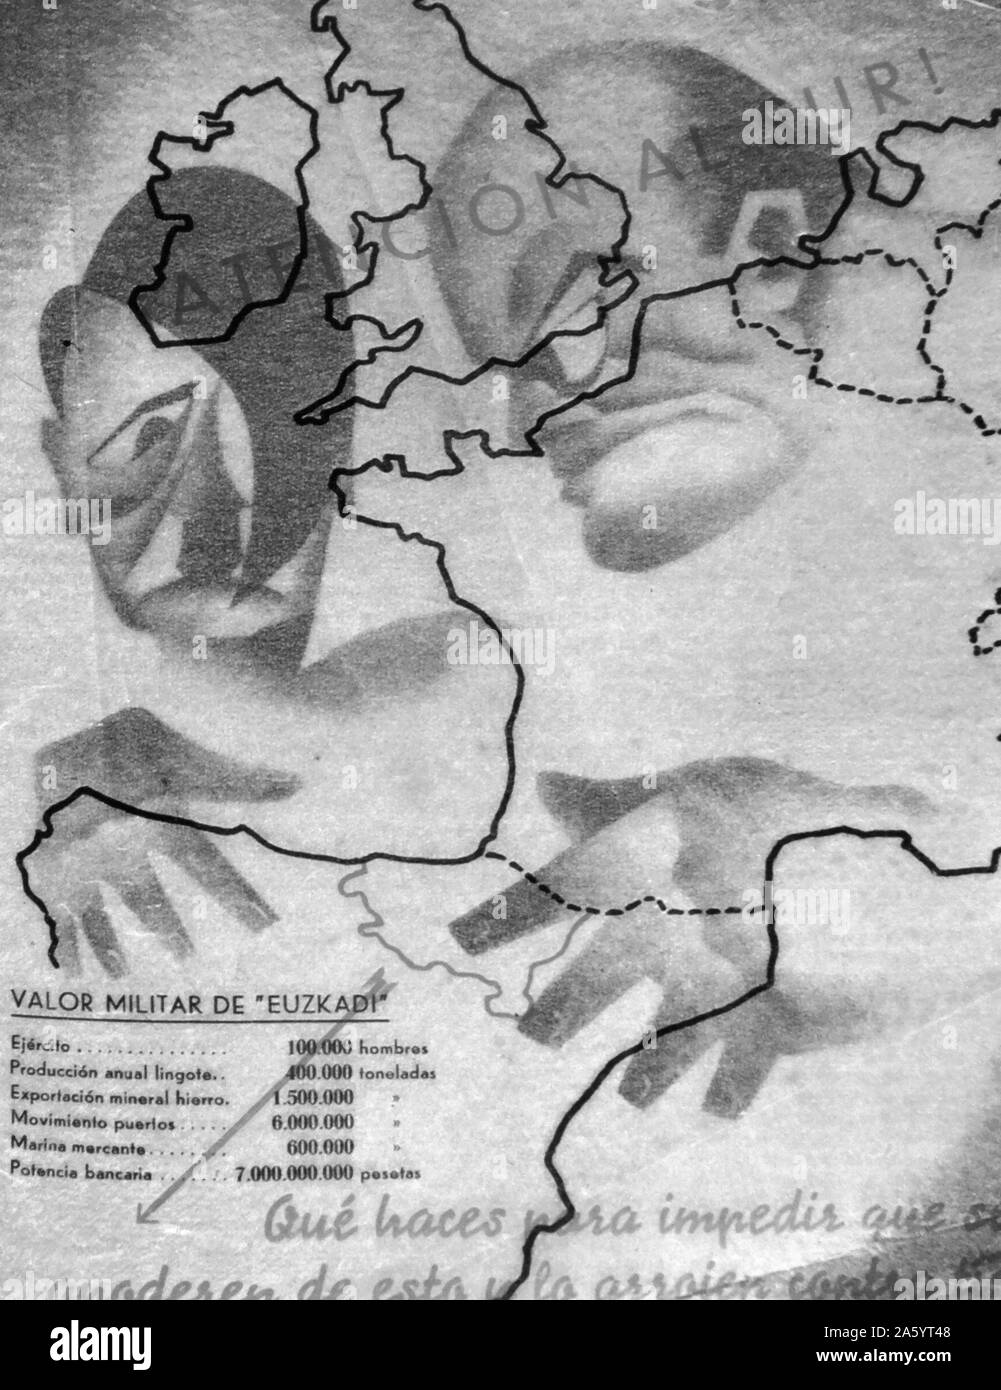 Spanischer Bürgerkrieg: Anti-Fascisty Propaganda Darstellung der Bedrohung von Mussolini und Hitler und den Vormarsch der Faschismus in Richtung Spanien Stockfoto